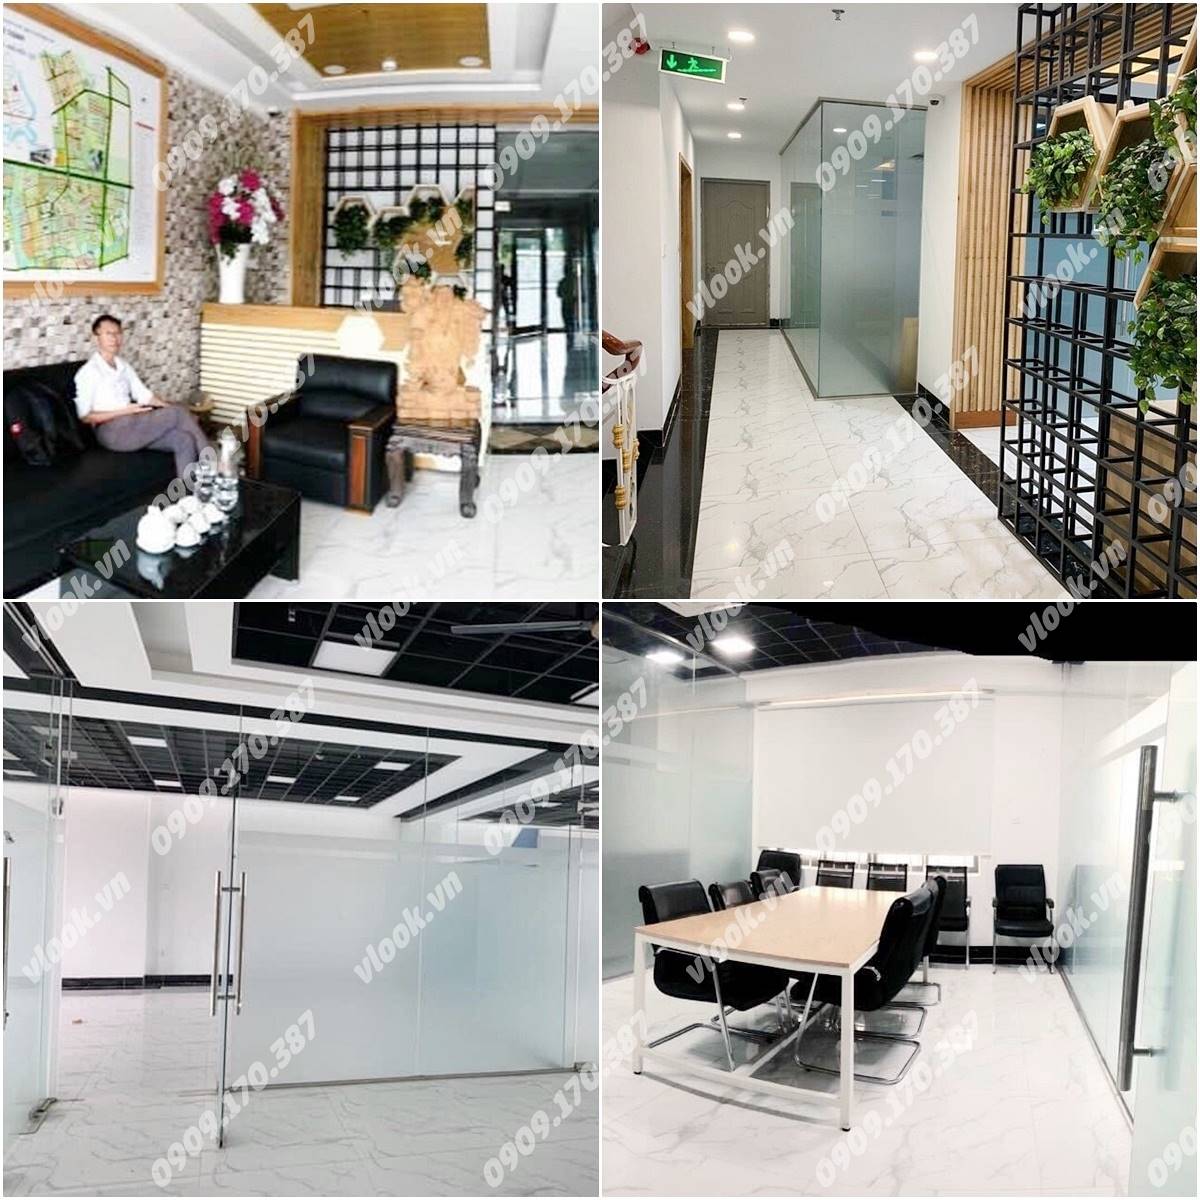 Cao ốc cho thuê văn phòng tòa nhà Hưng Phú Thành Building, Đỗ Xuân Hợp, Quận 9, TPHCM - vlook.vn